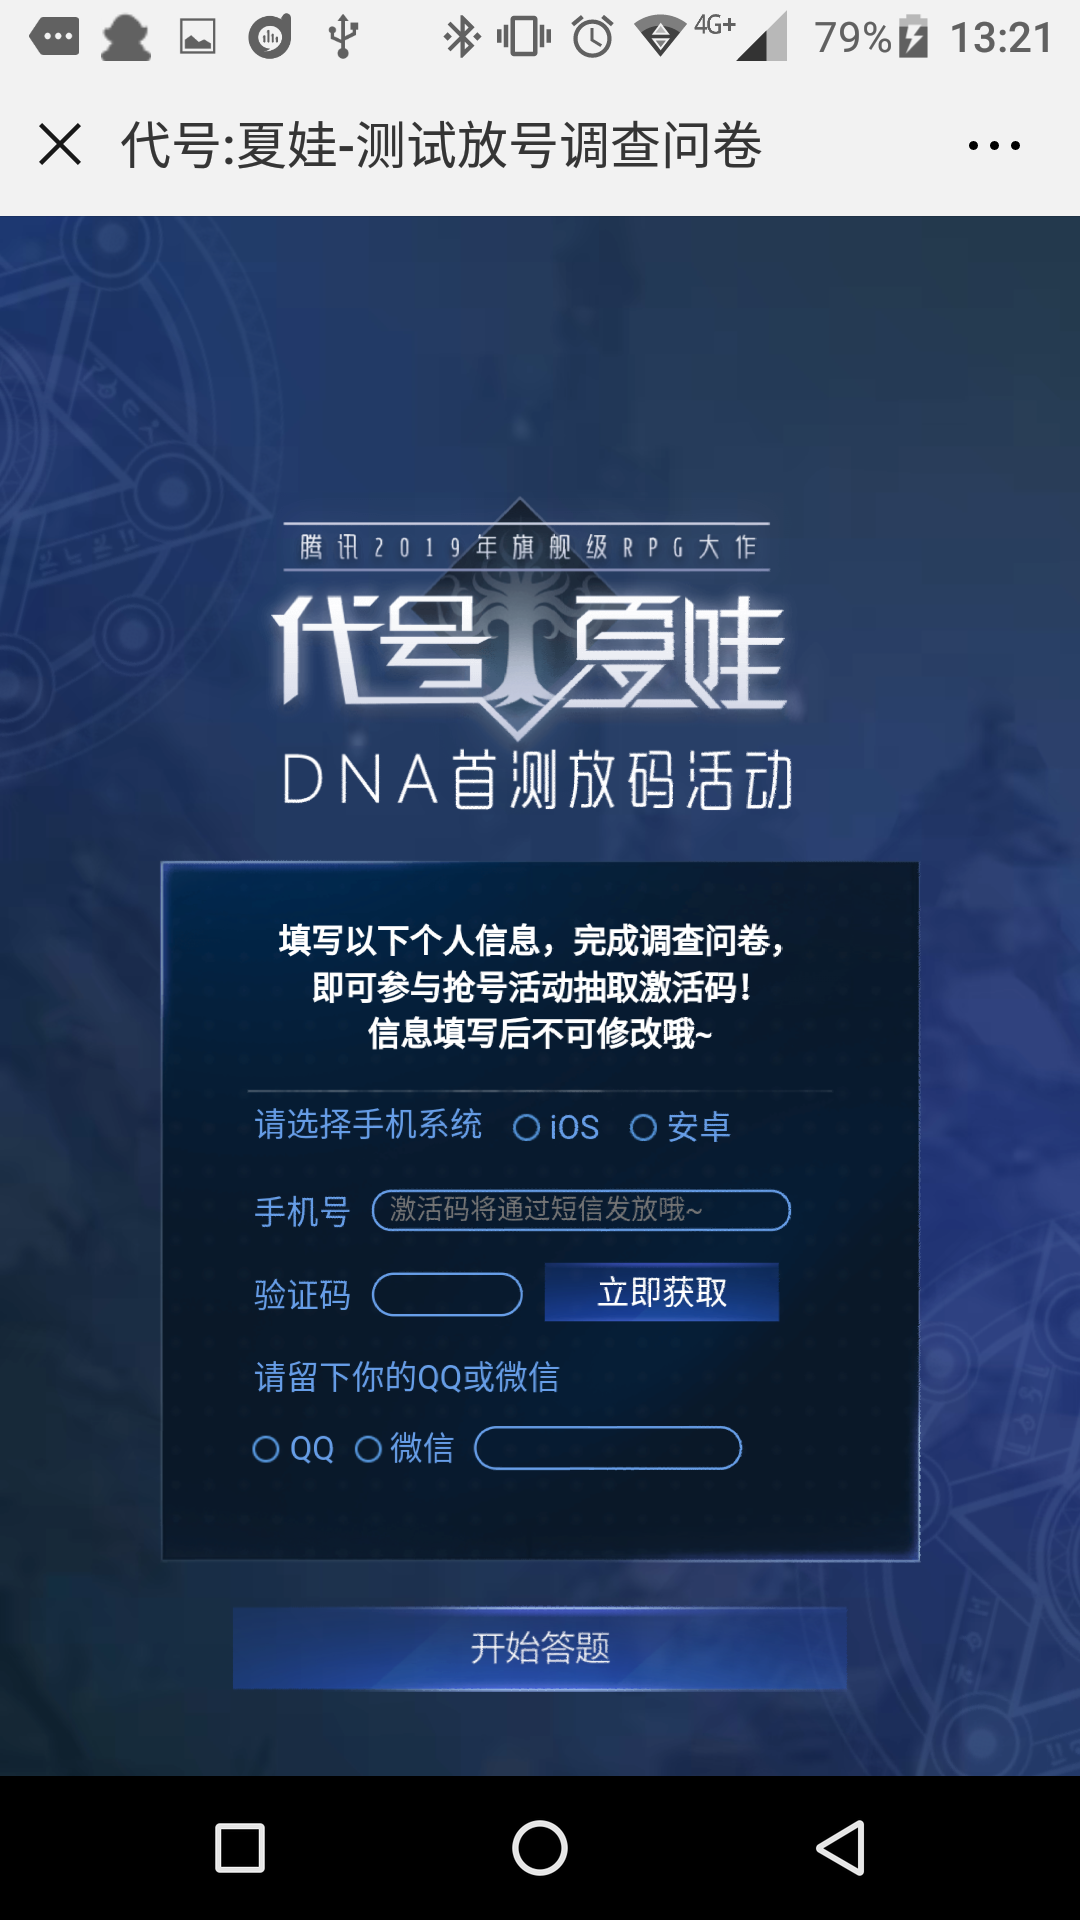 《龙族幻想》官方首发抢码方法流程介绍